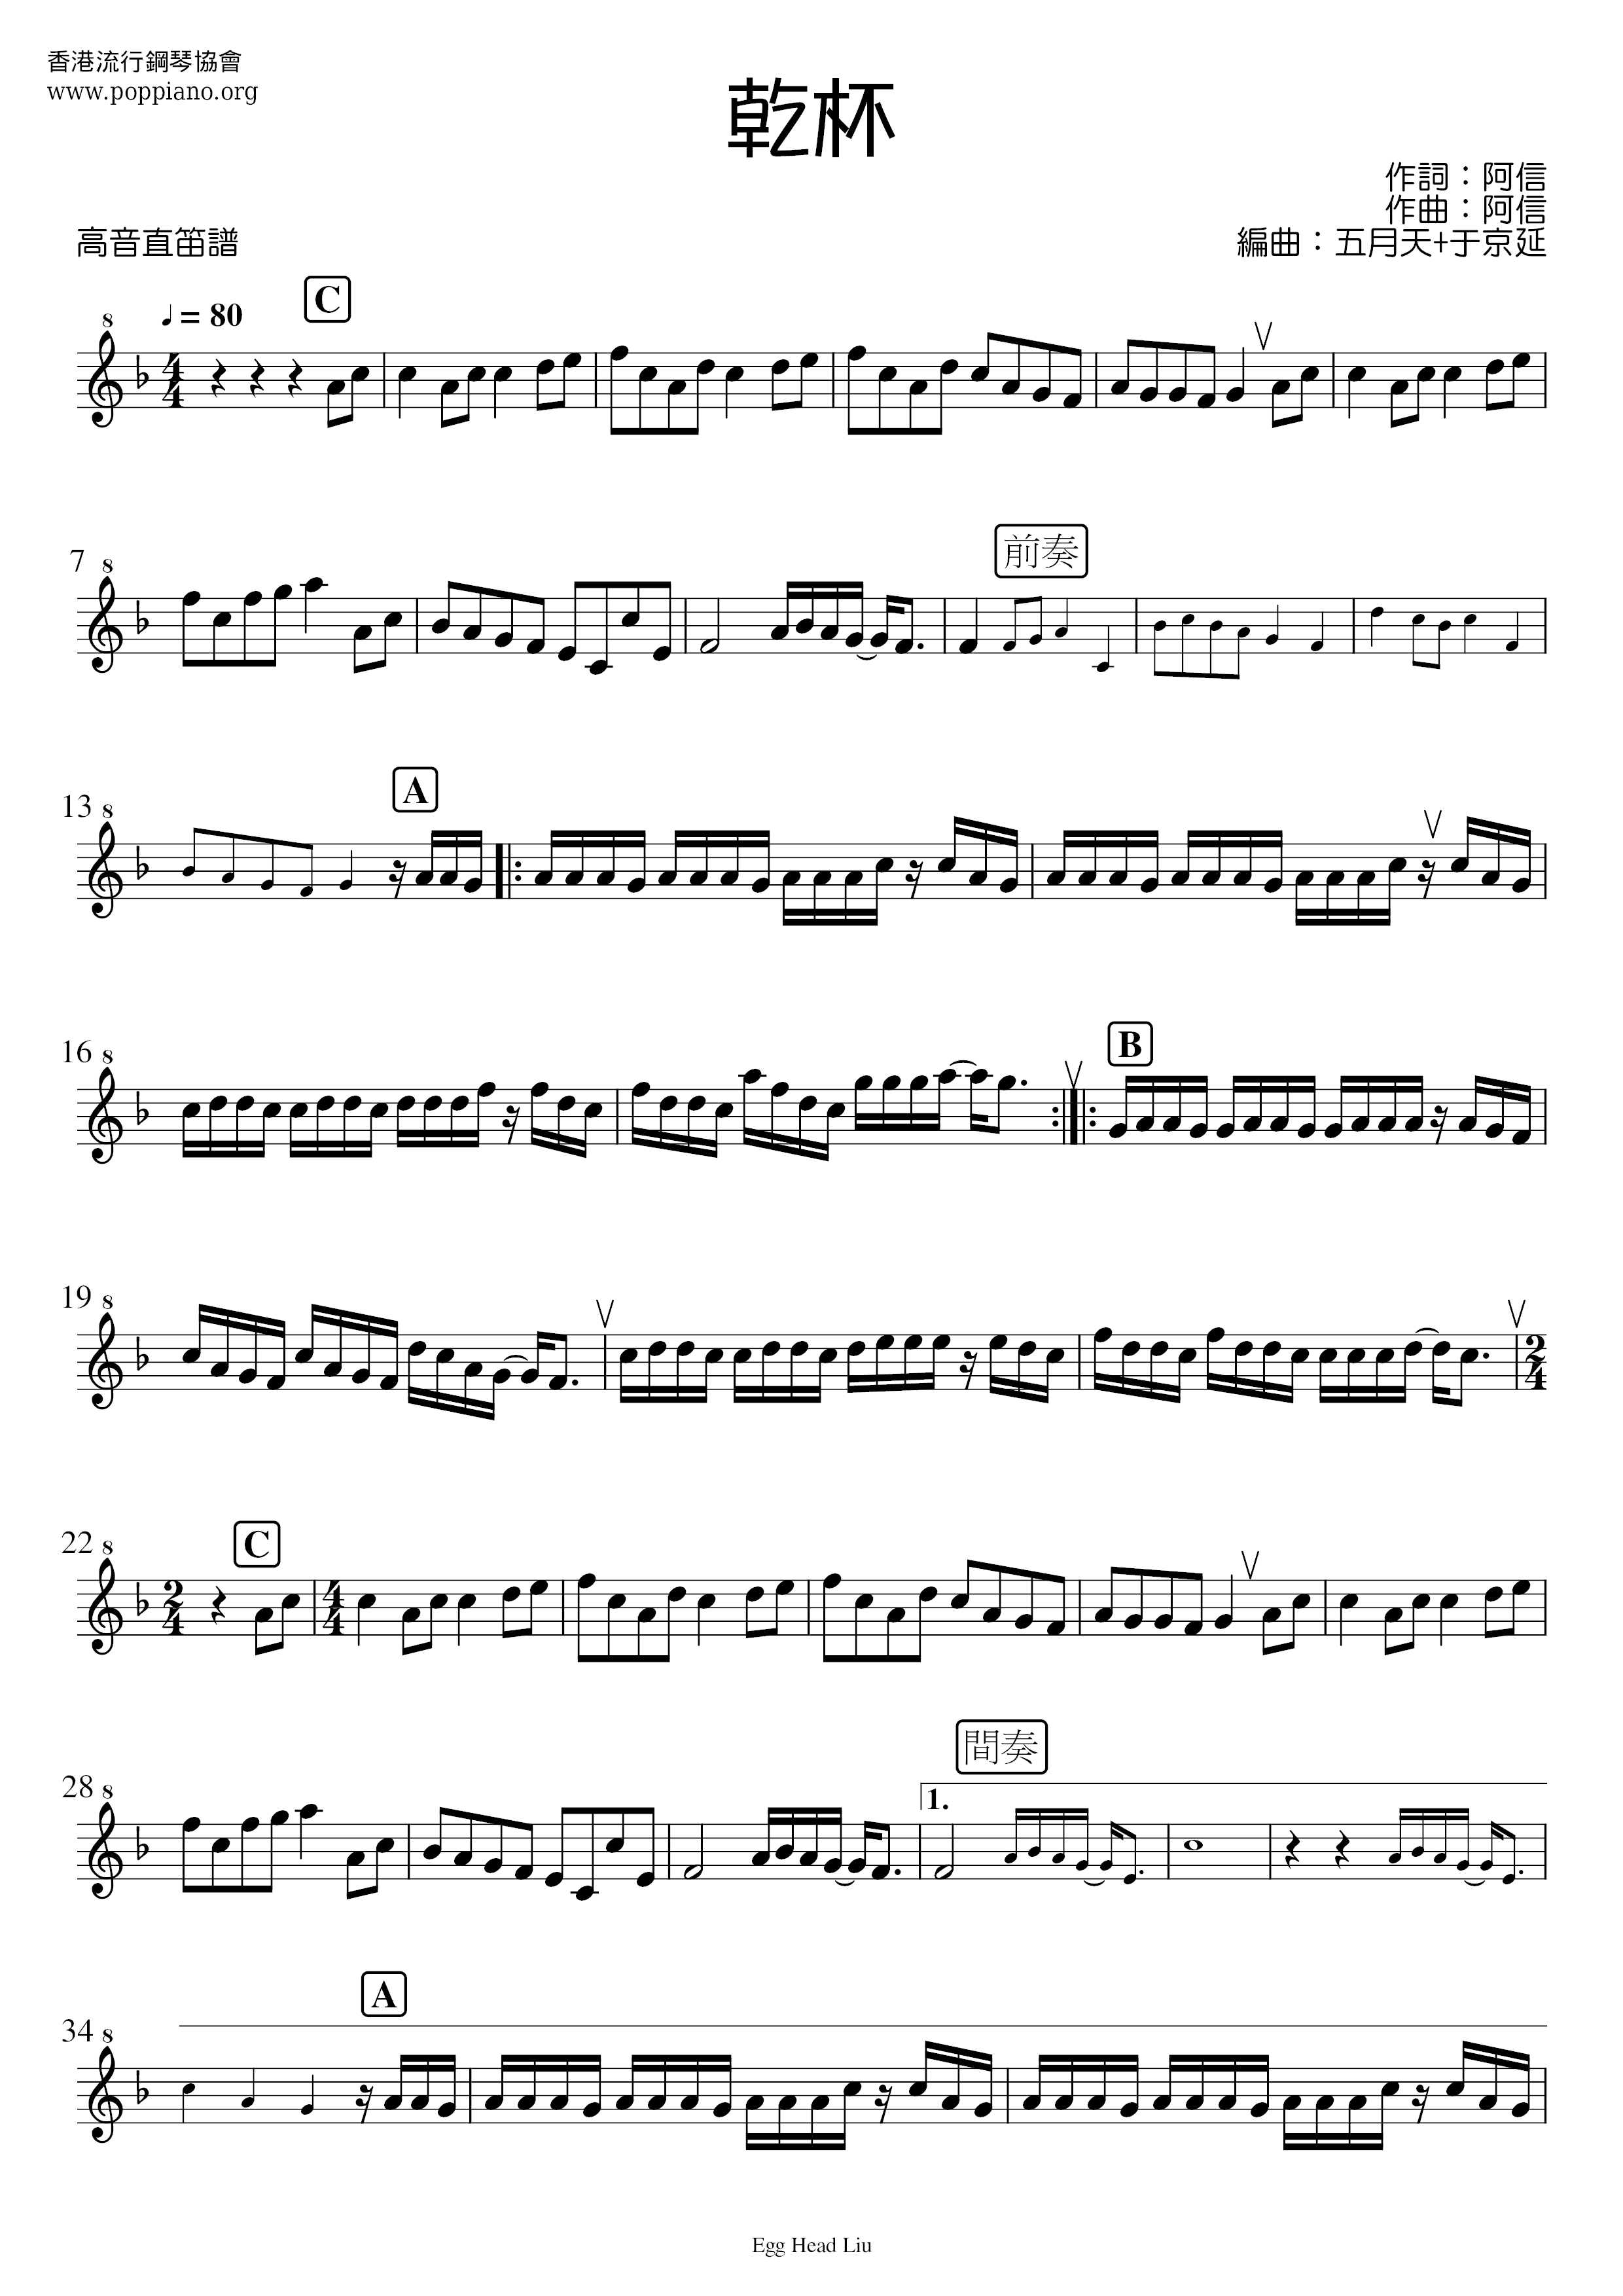 五月天 乾杯小提琴譜pdf 香港流行鋼琴協會琴譜下載